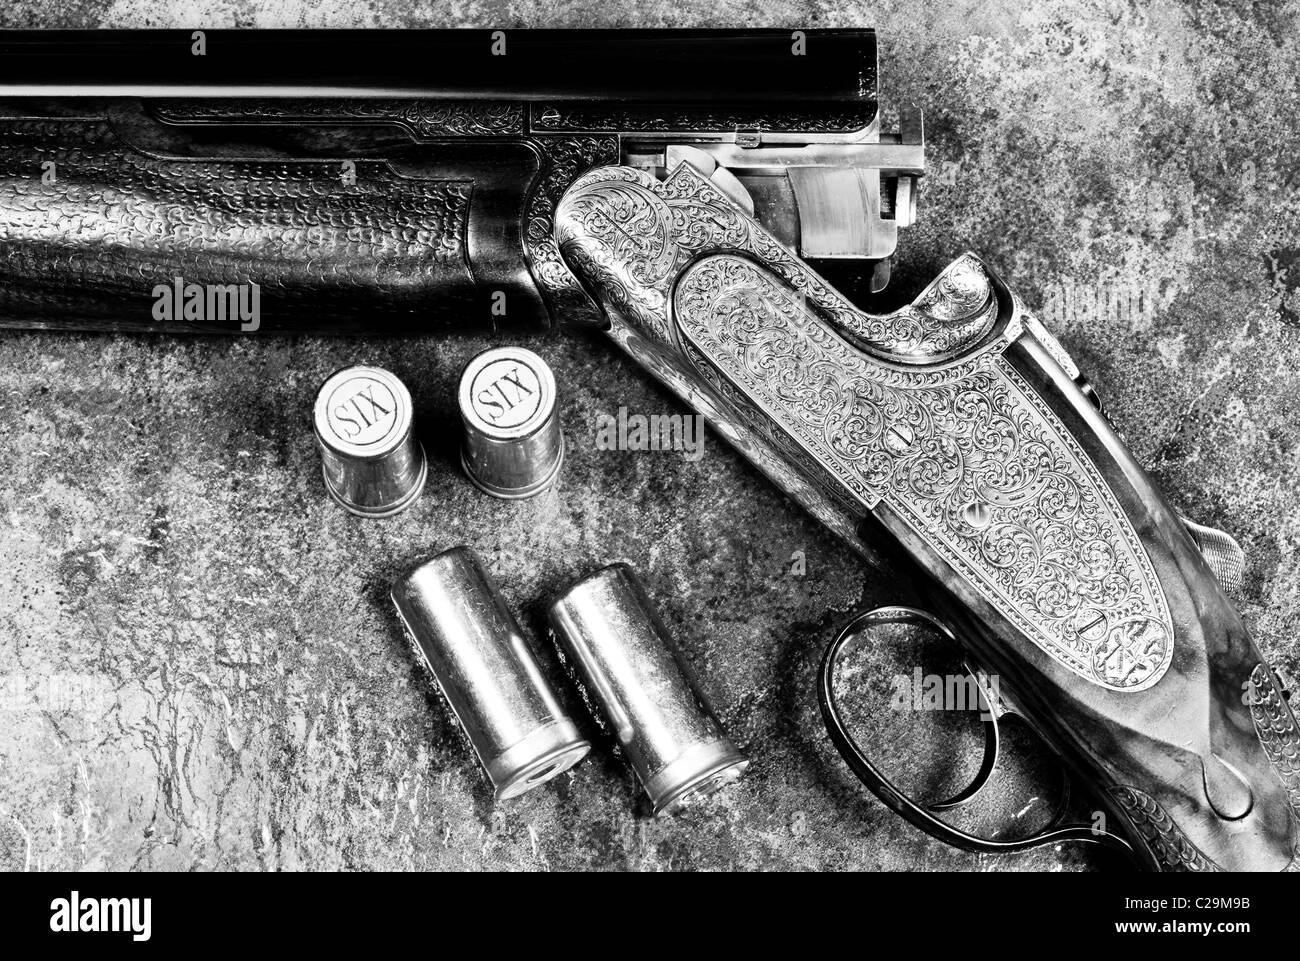 Bolas Blancas Con Un Arma Negro Foto de archivo - Imagen de pistola,  pelotilla: 27176492